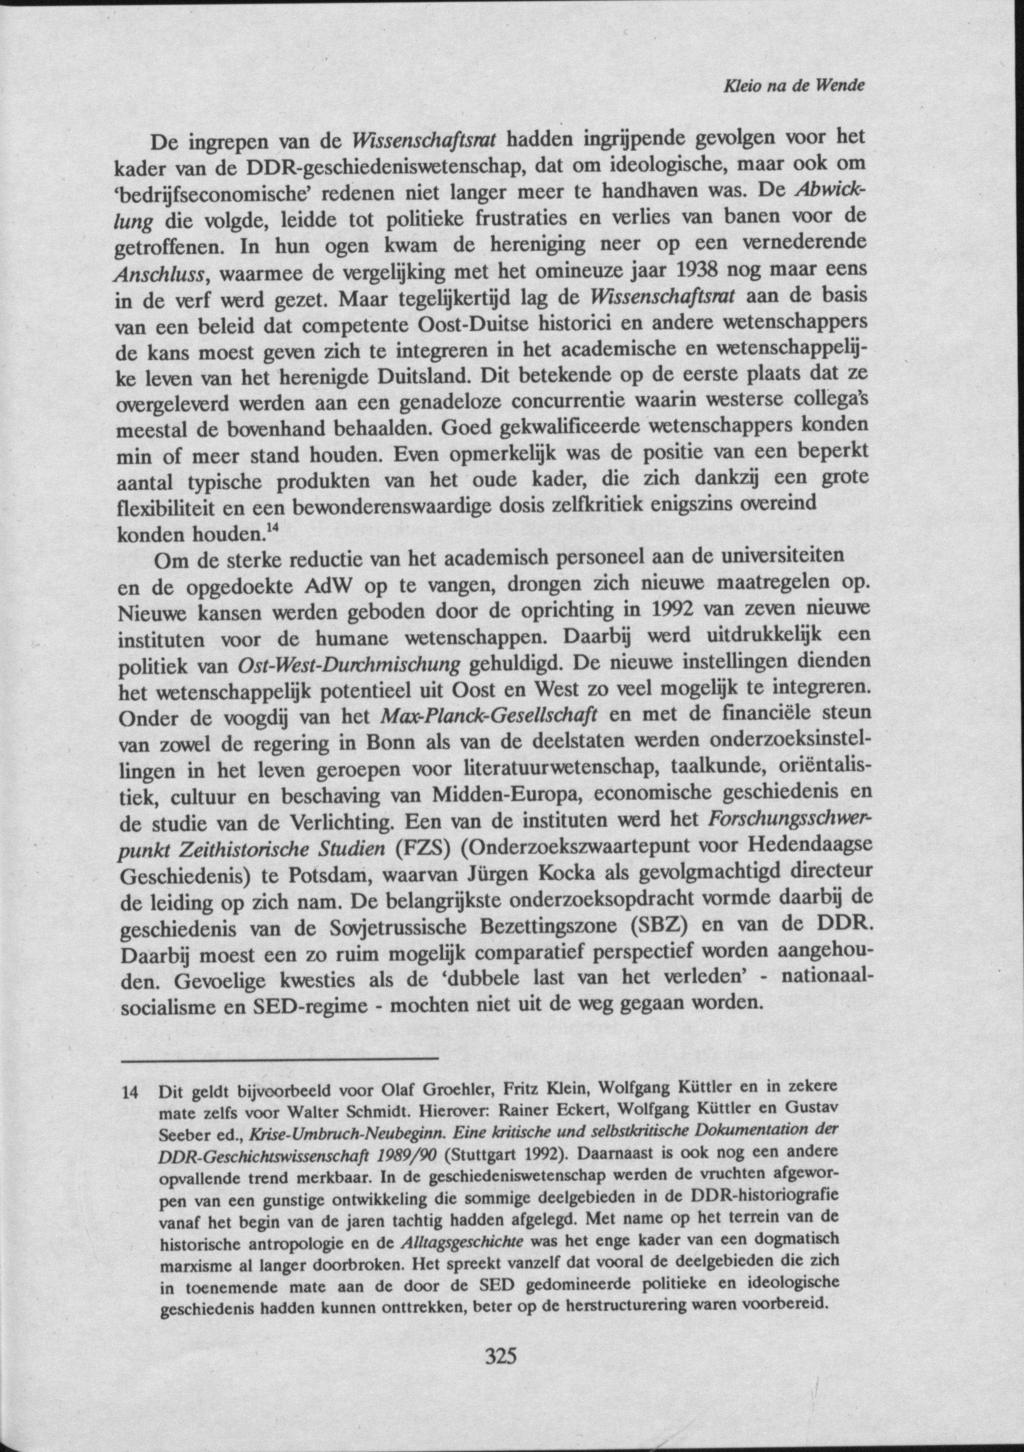 KJeio na de Wende De ingrepen van de Wissenschaftsrat hadden ingrijpende gevolgen voor het kader van de DDR-geschiedeniswetenschap, dat om ideologische, maar ook om 'bedrijfseconomische' redenen niet